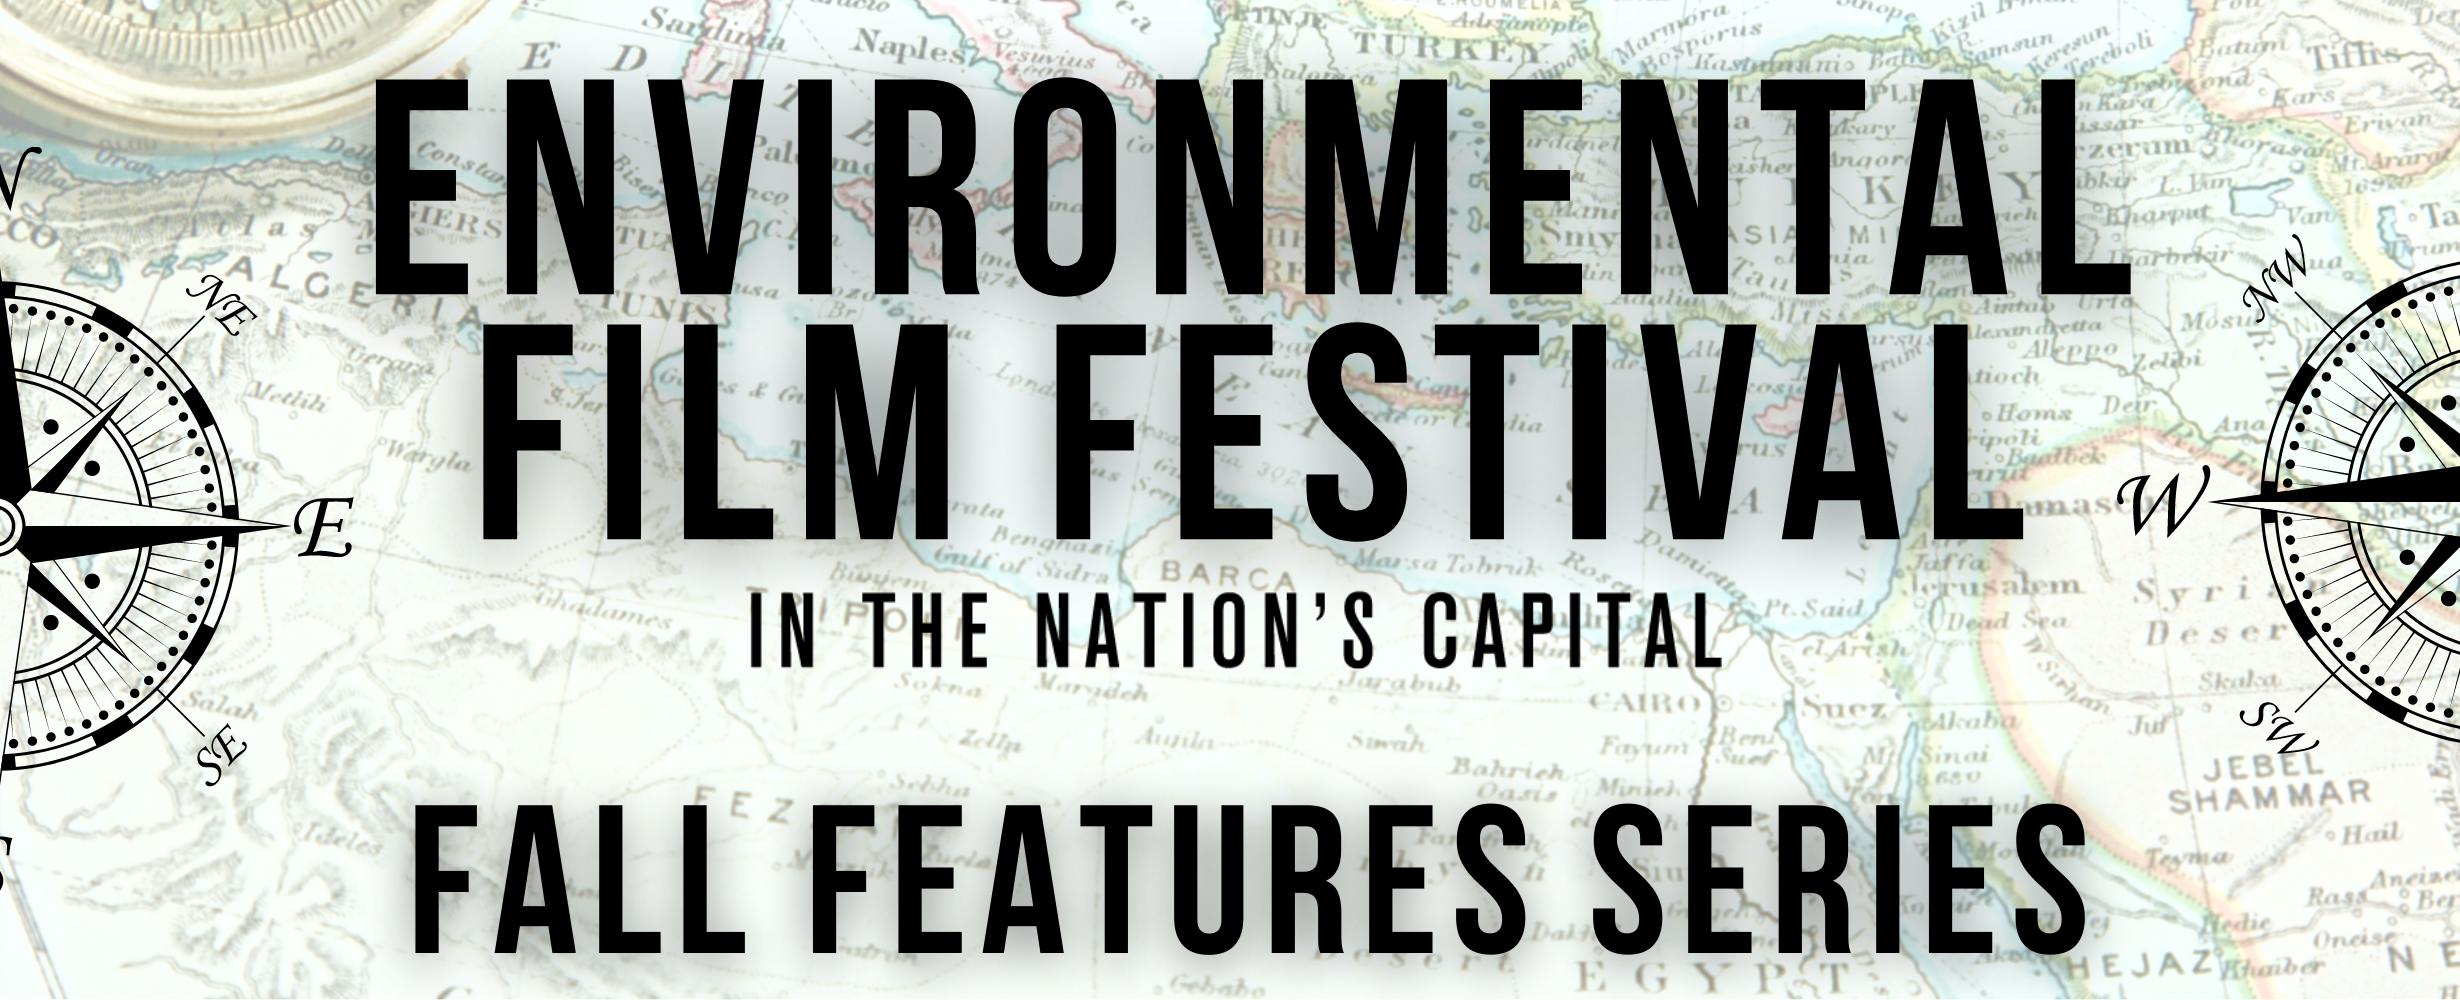 DC Environmental Film Fest Fall Series